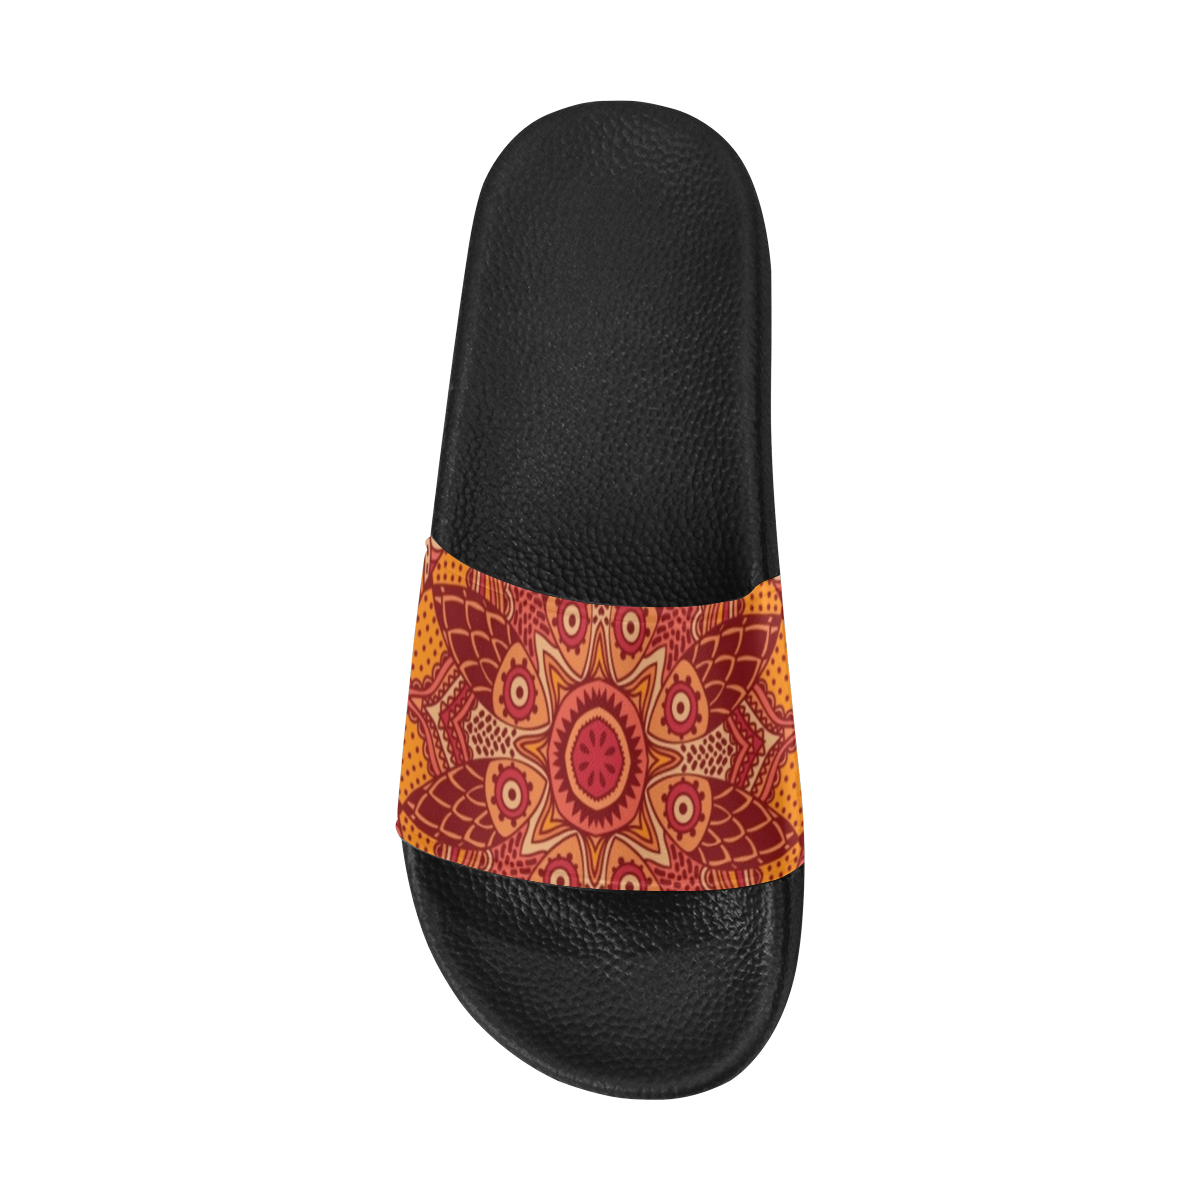 MANDALA SPICE OF LIFE Women's Slide Sandals (Model 057)